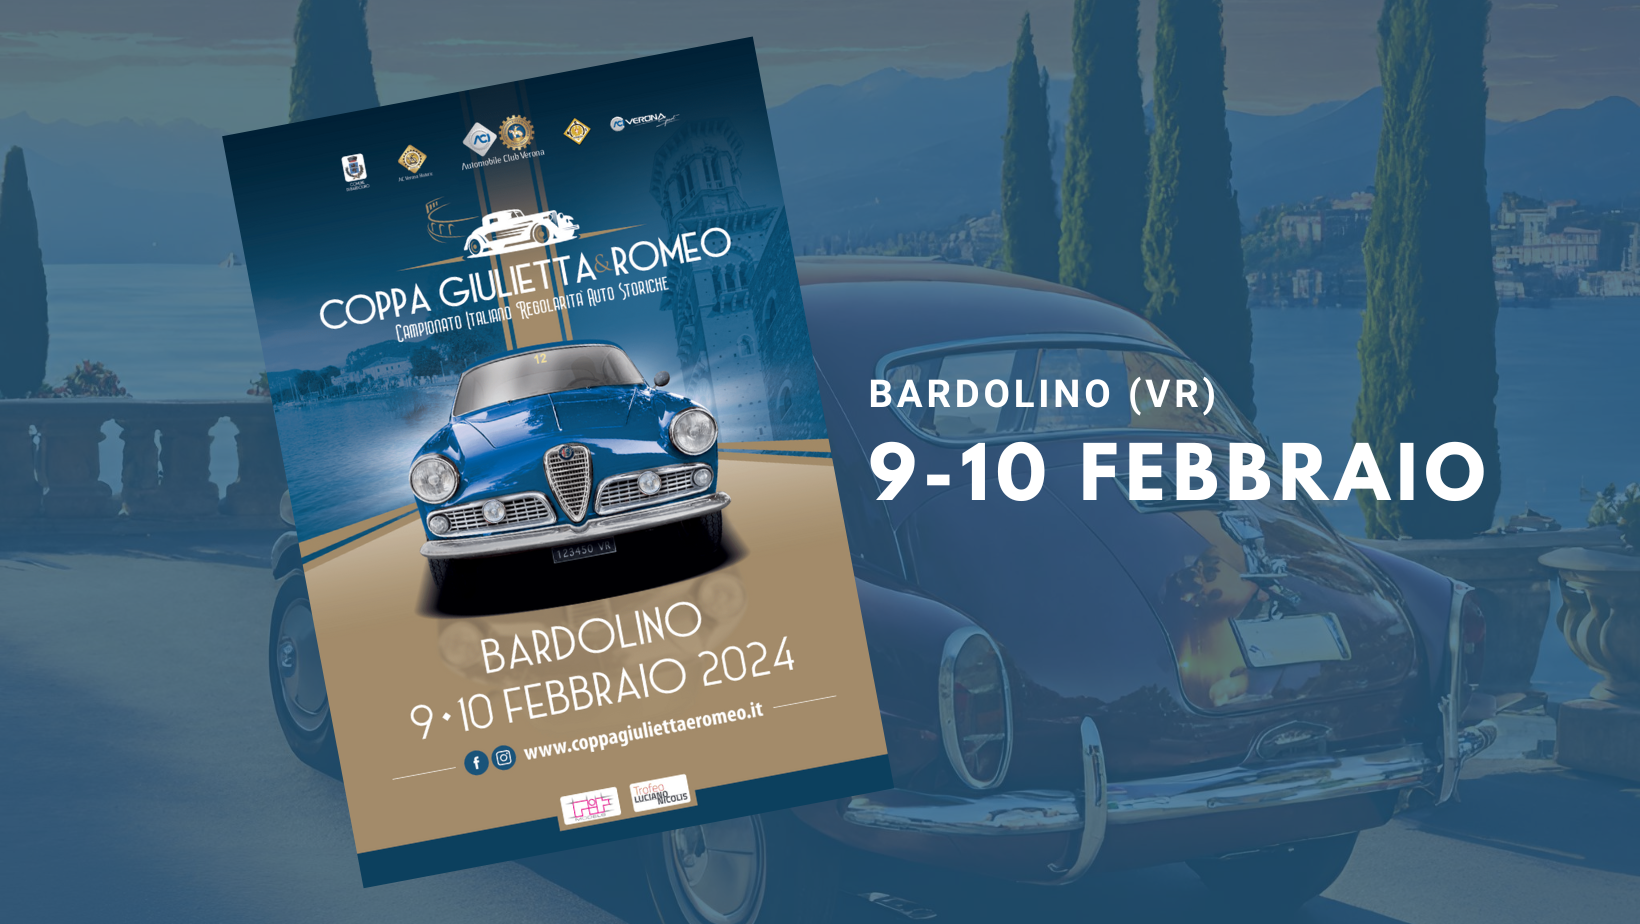 Anmeldung für die Coppa Giulietta&Romeo für Oldtimer am 9. und 10. Februar geöffnet